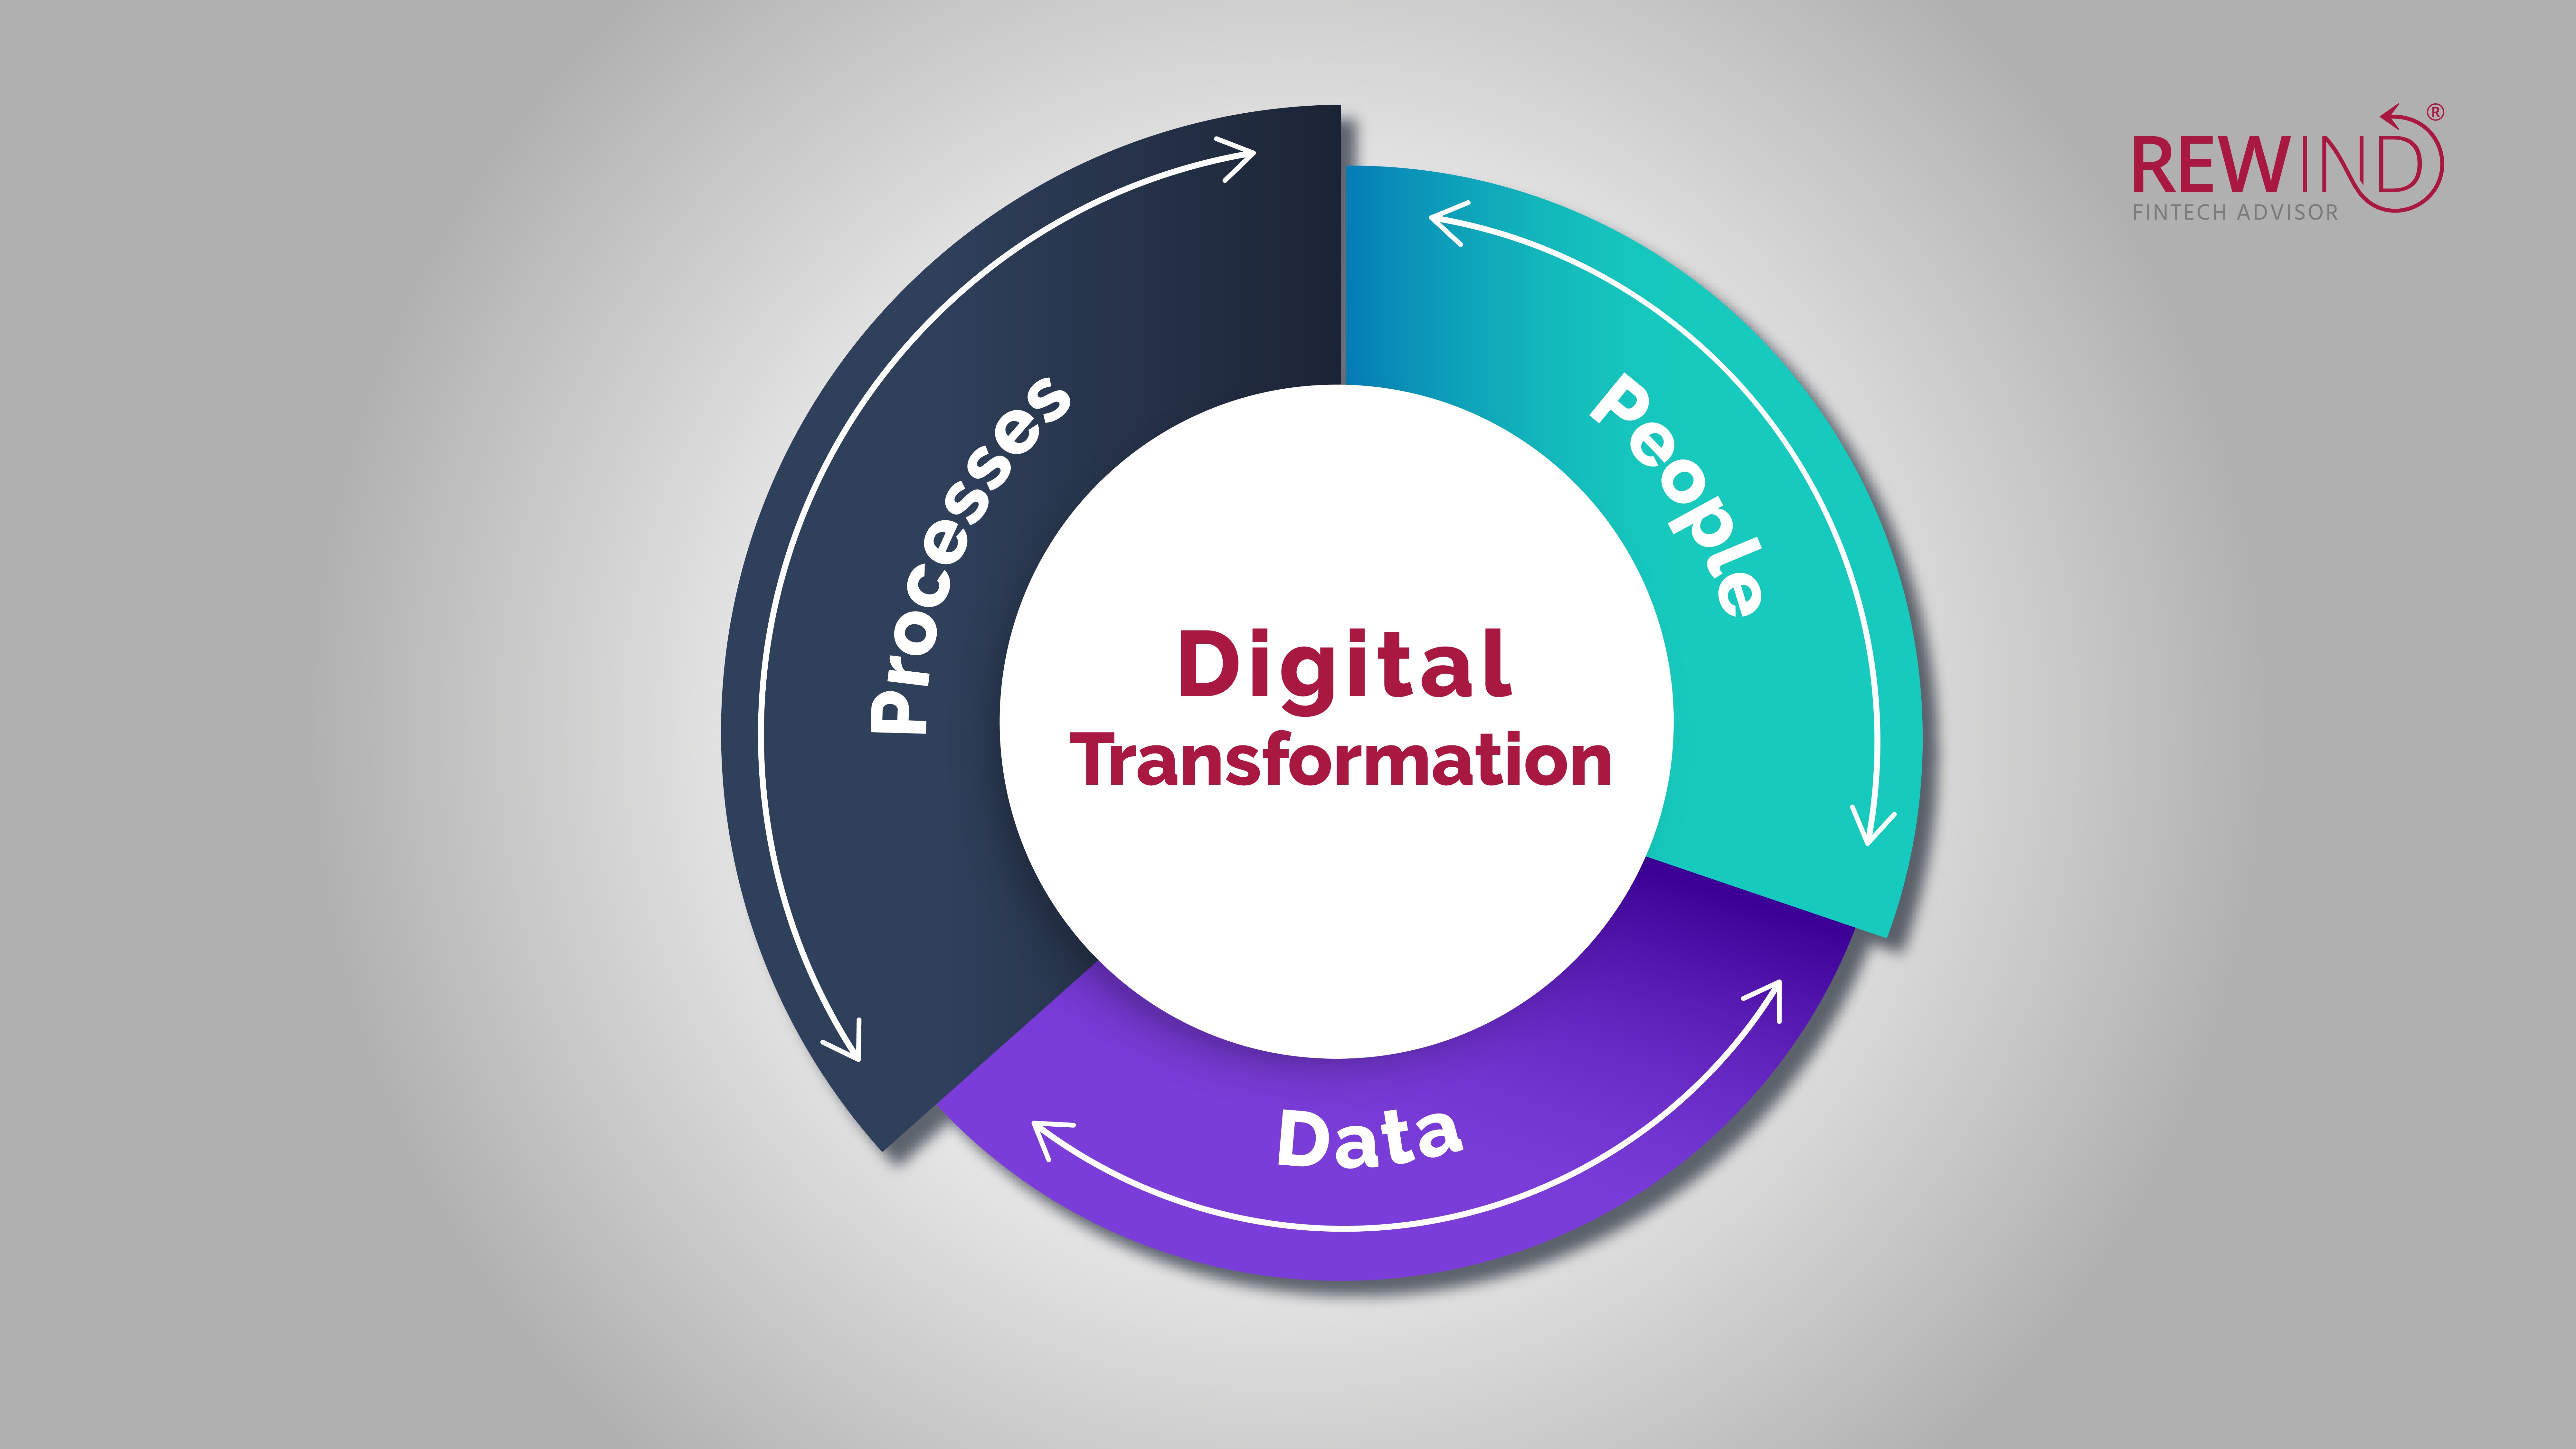 La digital transformation si compone di 3 fattori: data, people and processes